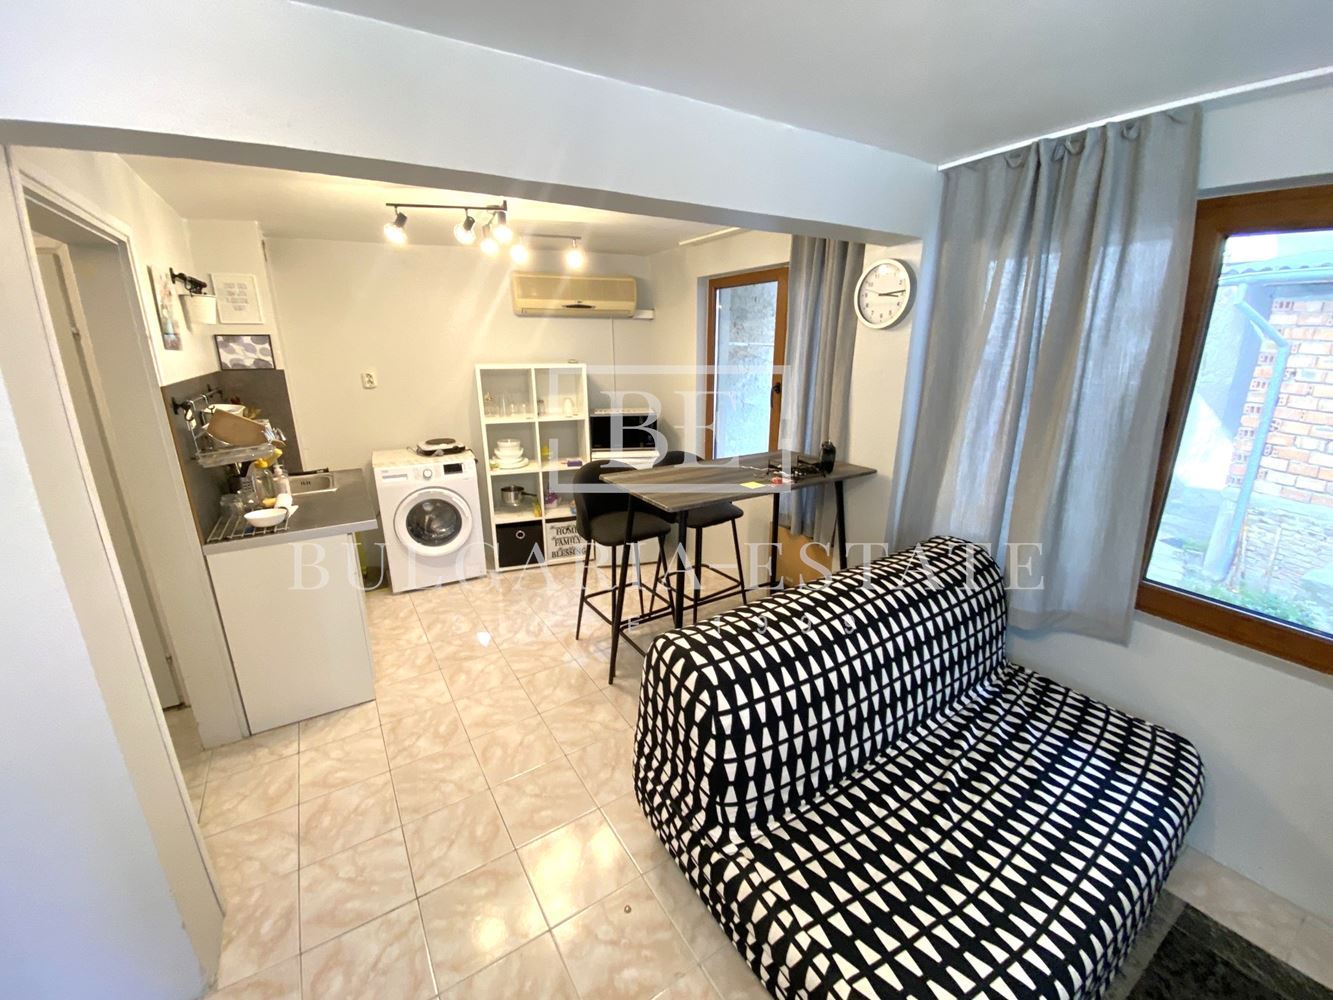 1-bedroom apartment for rent, Sevastopol, gr. Varna, near IU - VARNA, VINS - 0